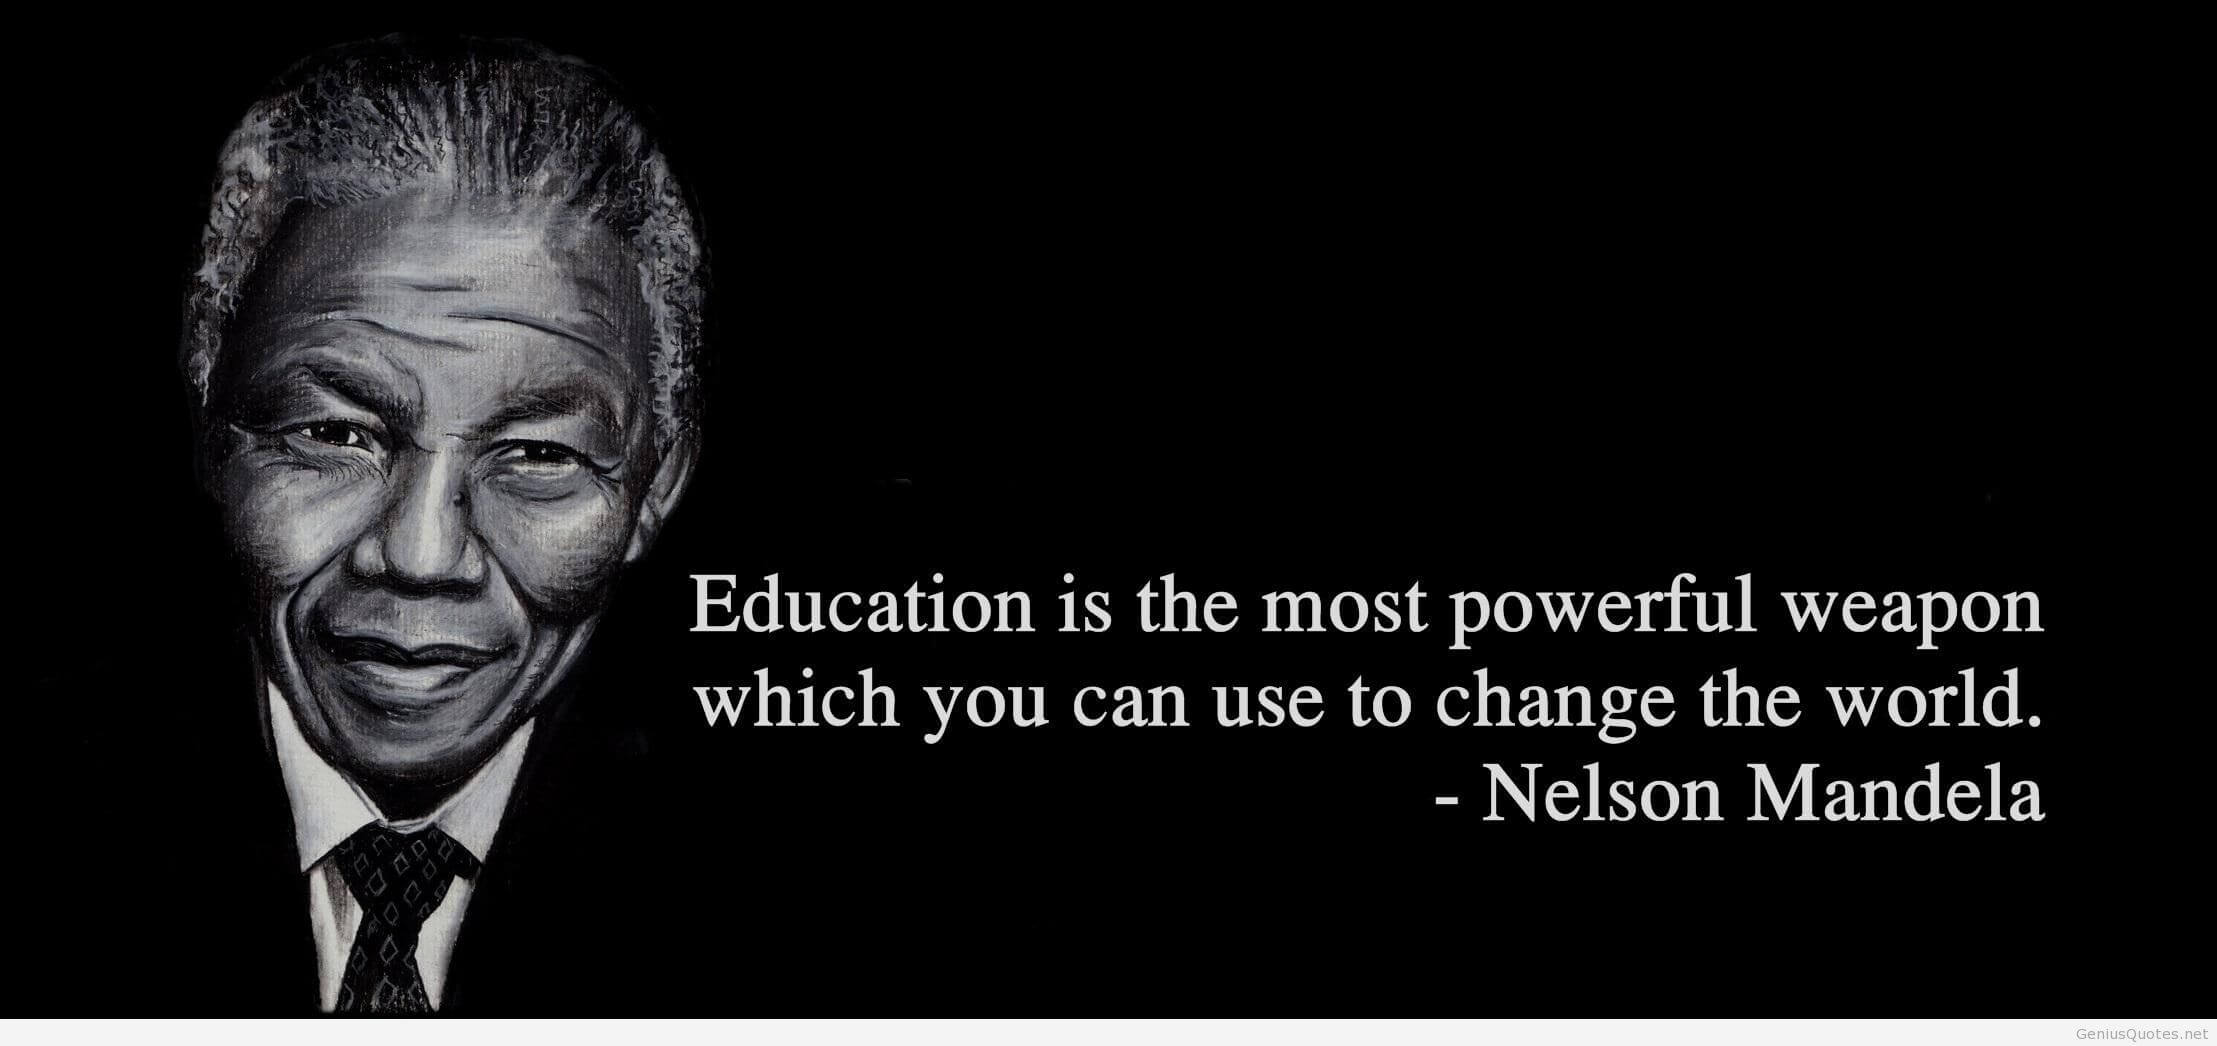 Mandela Quote